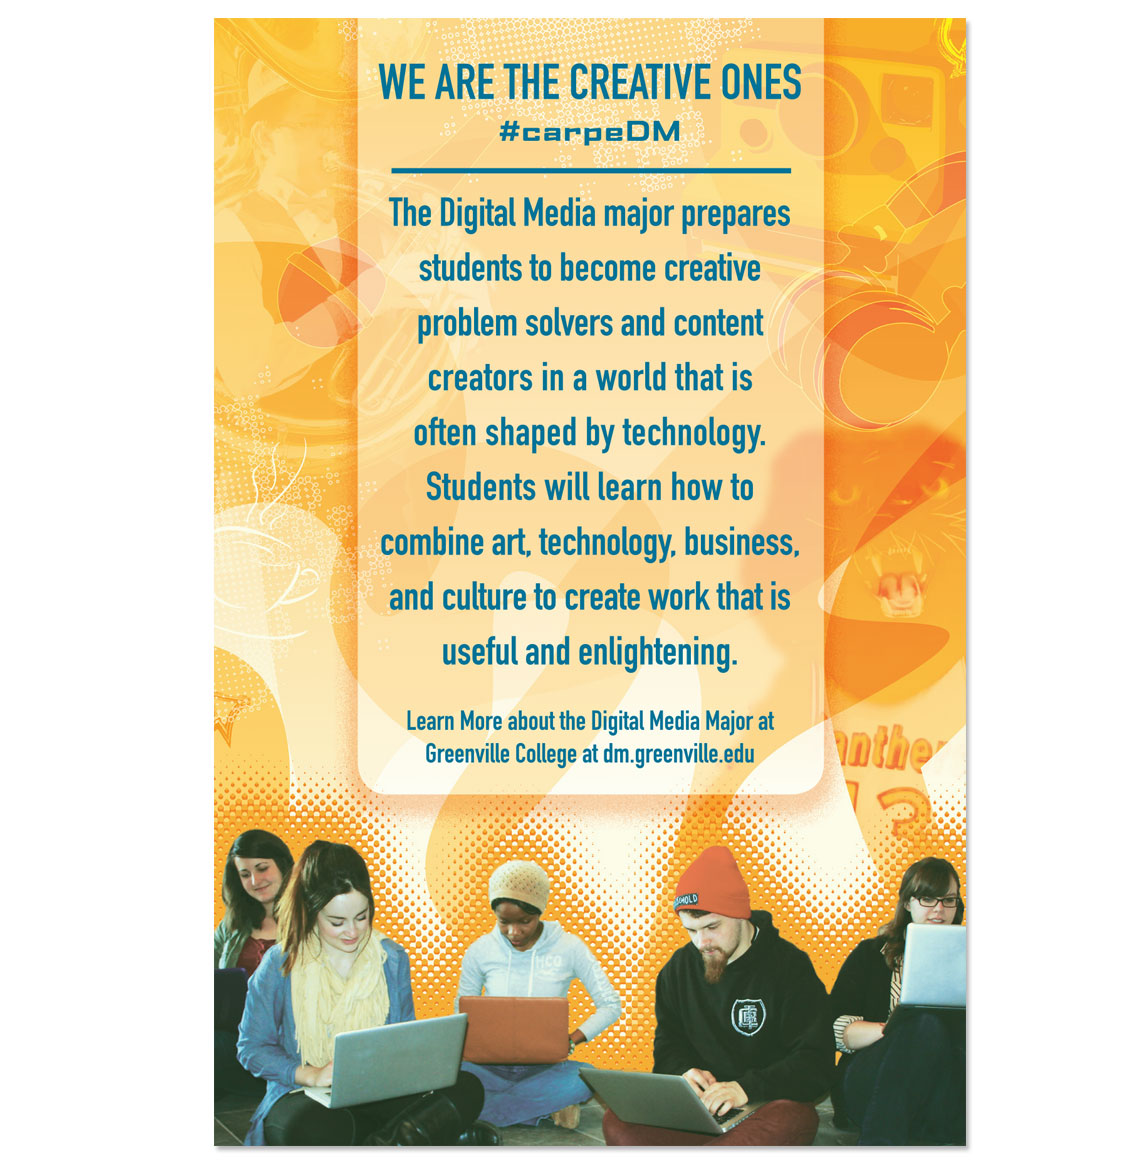 Greenville College Digital Media Promotional Image